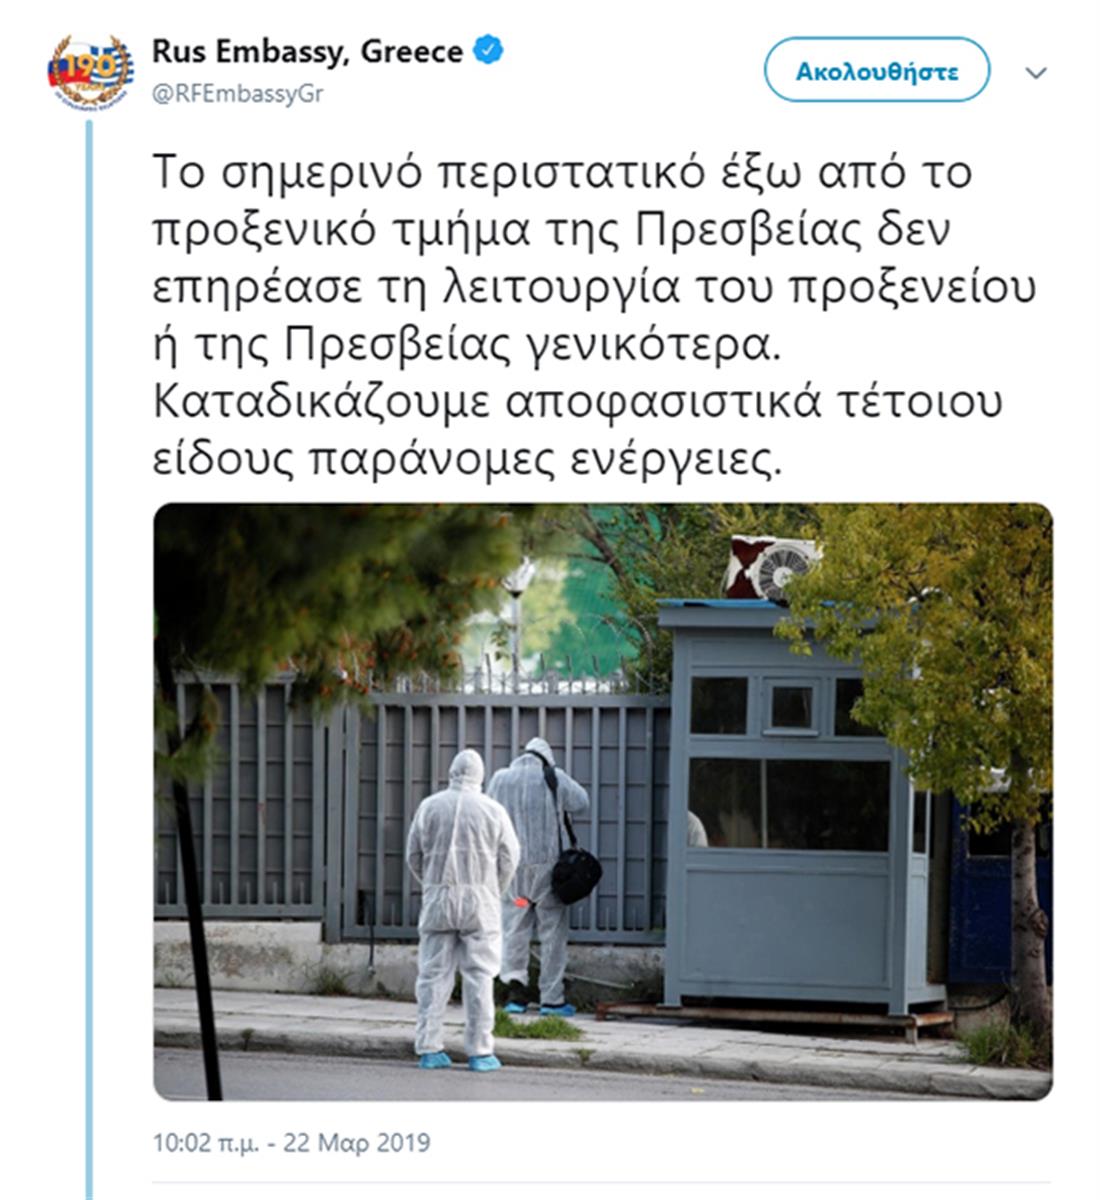 Ρωσική πρεσβεία - tweet - έκρηξη - χειροβομβίδα